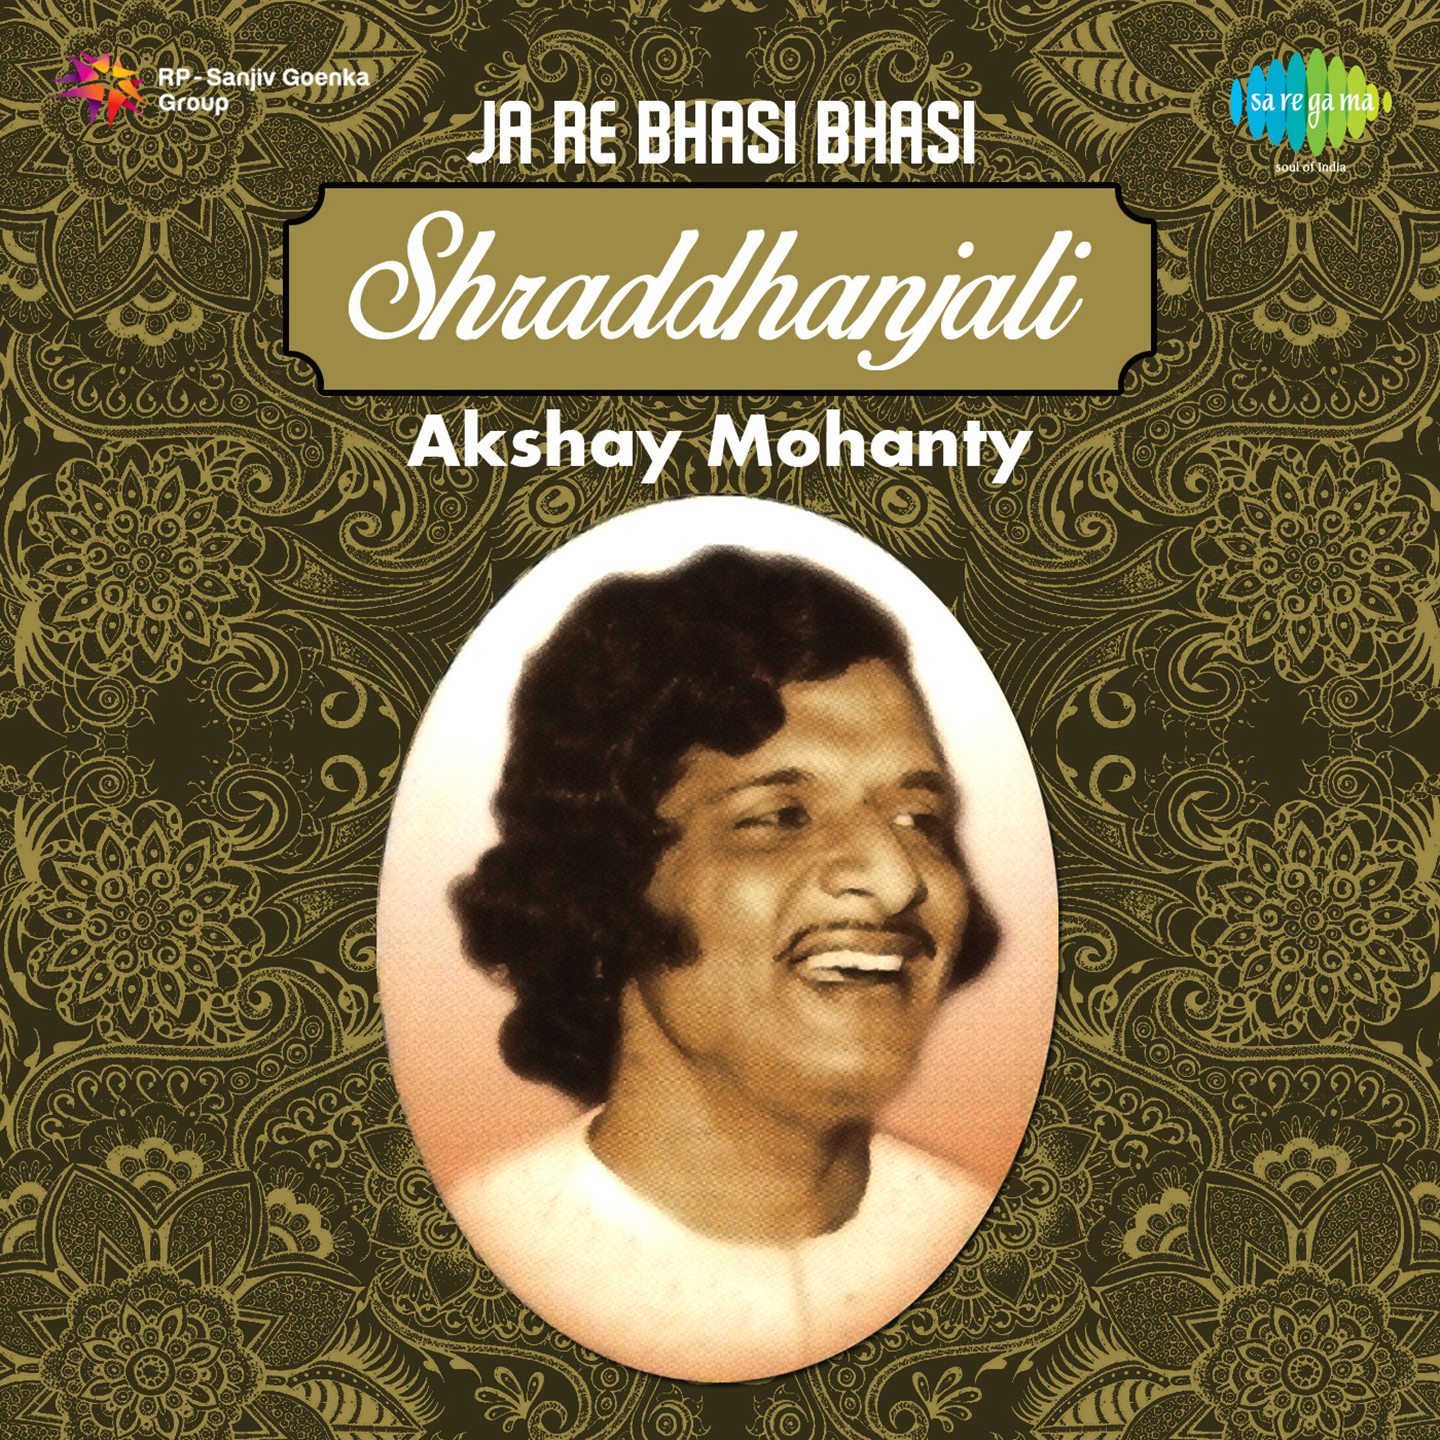 Shraddhanjali Akshay Mohanty